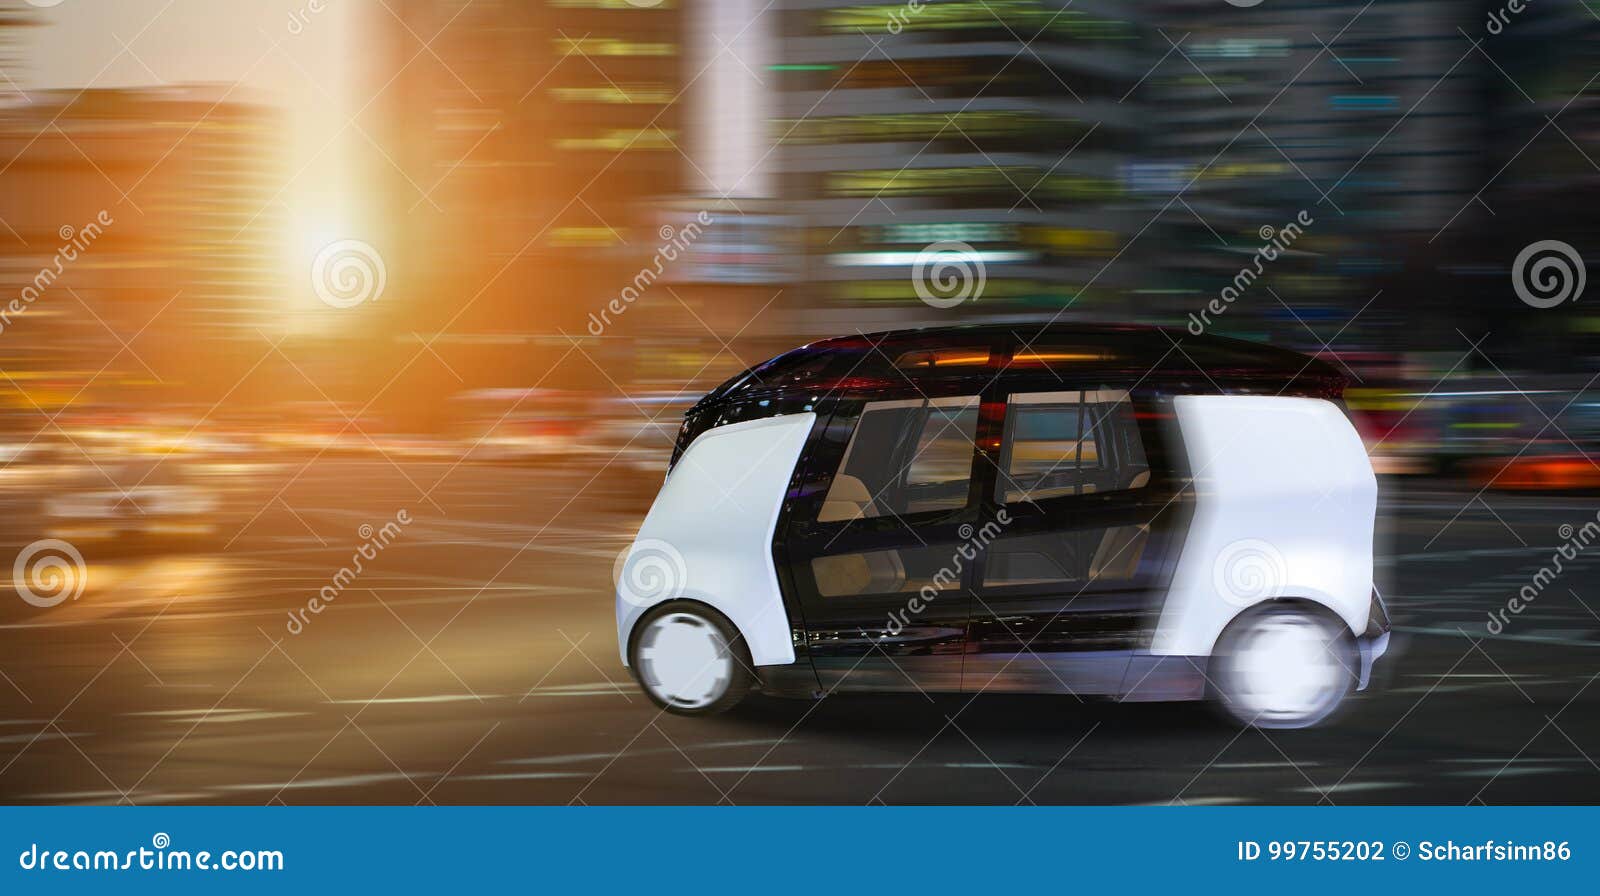 autonomous self driving smart bus